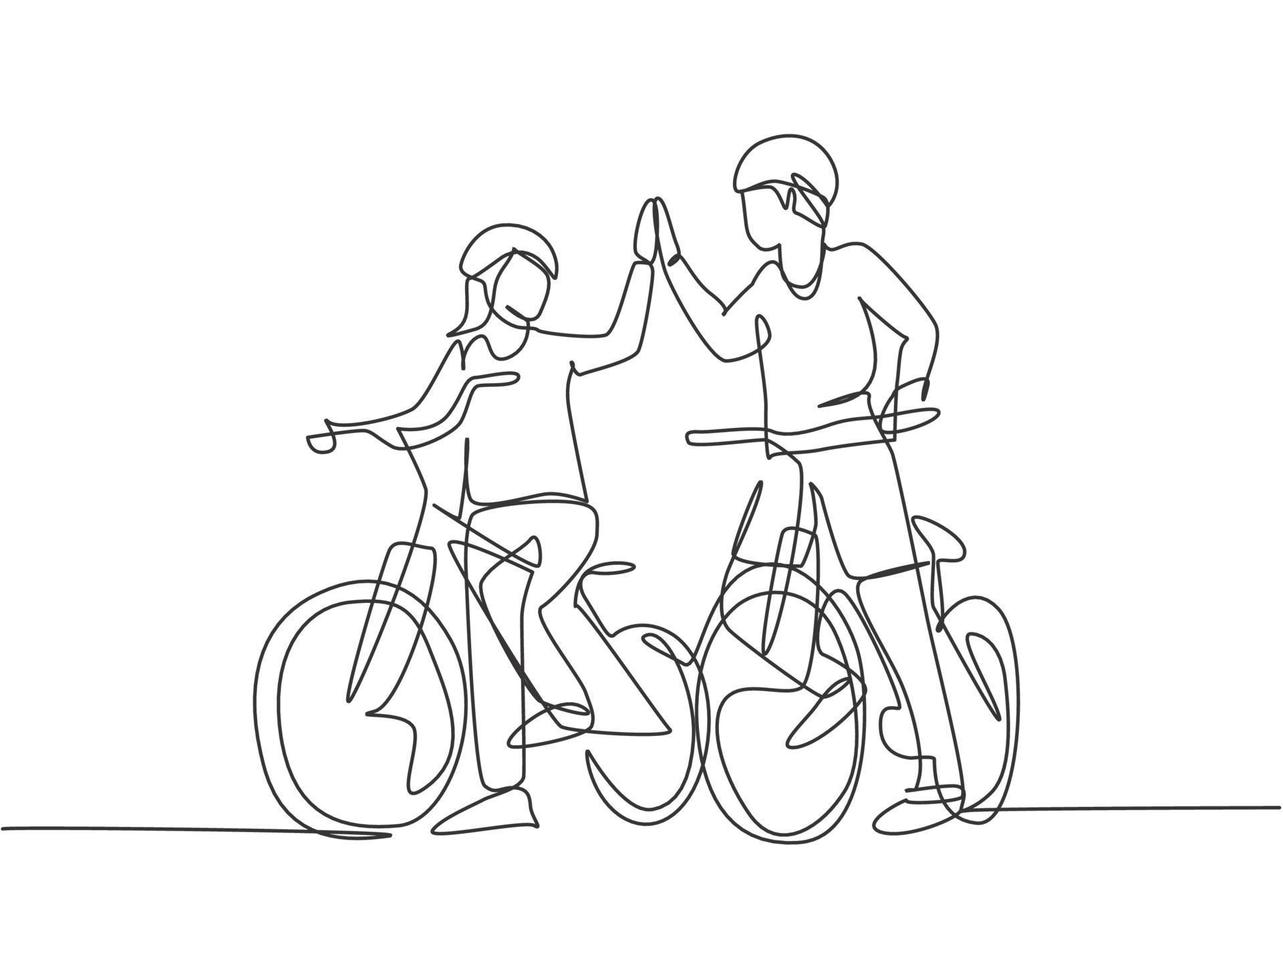 um desenho de linha do jovem casal feliz masculino e feminino dar um passeio com bicicleta juntos e dando mais cinco gesto. conceito de relacionamento romântico. ilustração em vetor desenho desenho em linha contínua